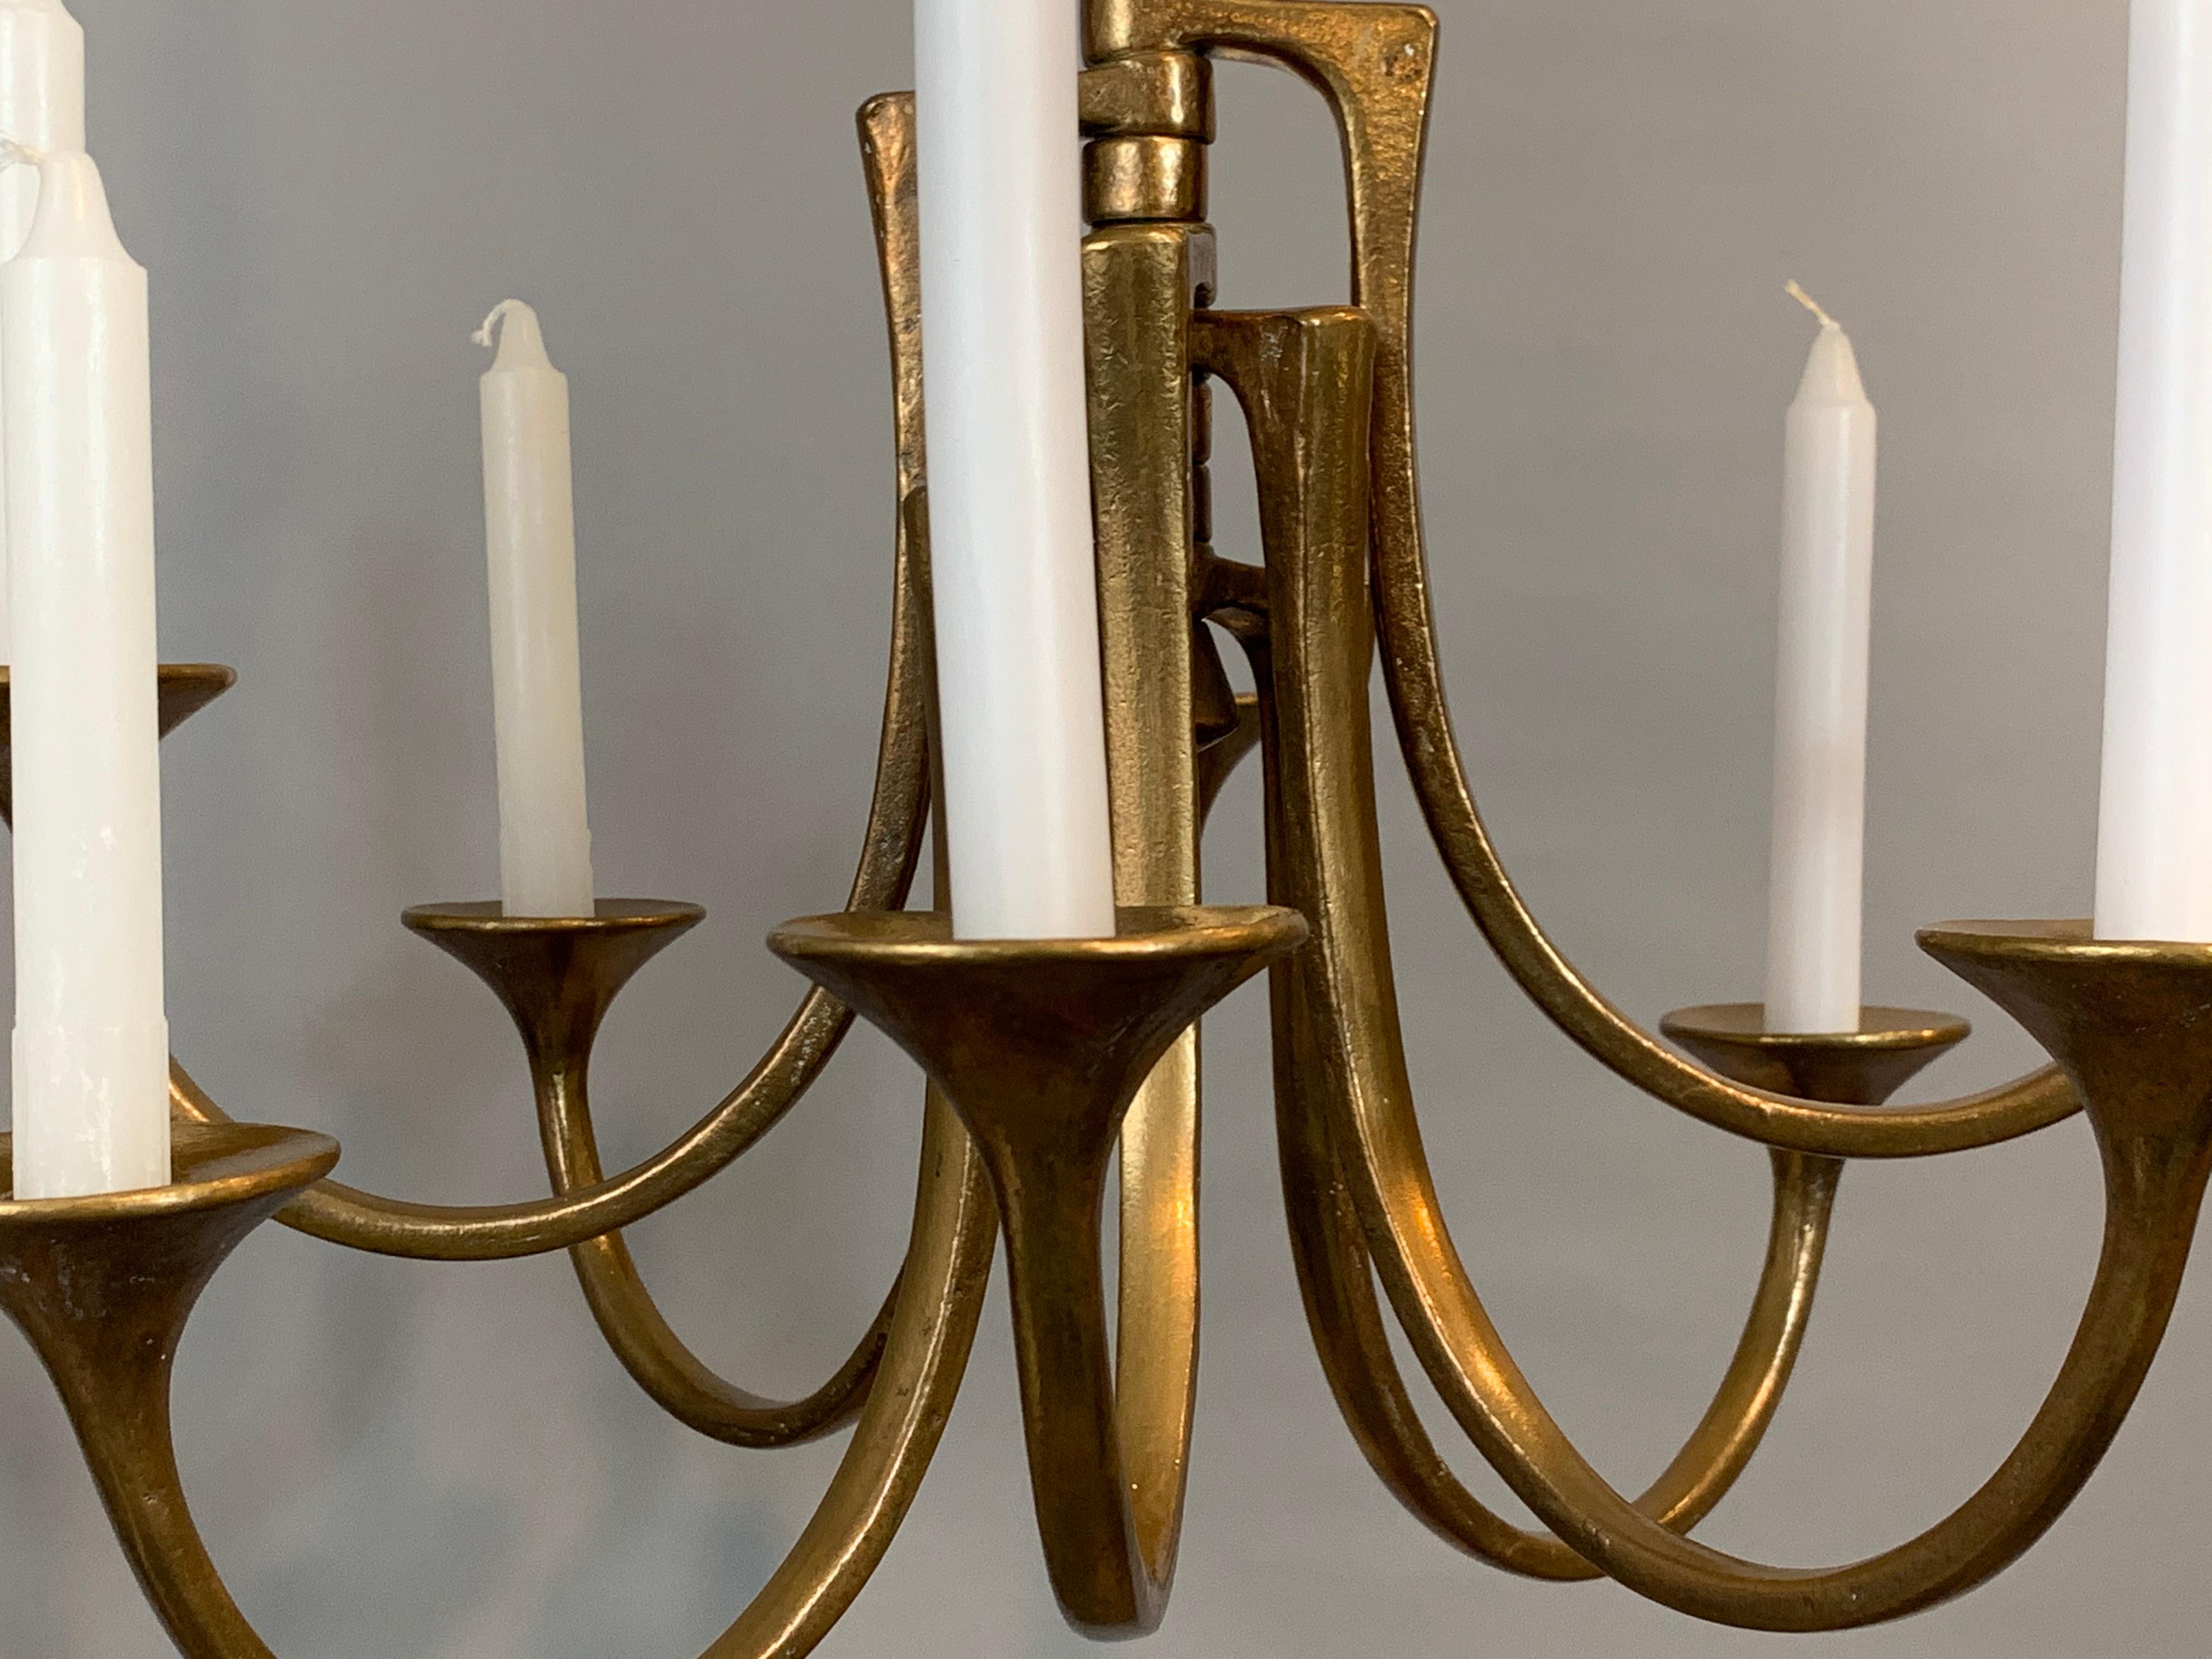 Hängende Harjes Metallkunst-Kerzenhalter aus Bronze, 1960er Jahre (Deutsch)